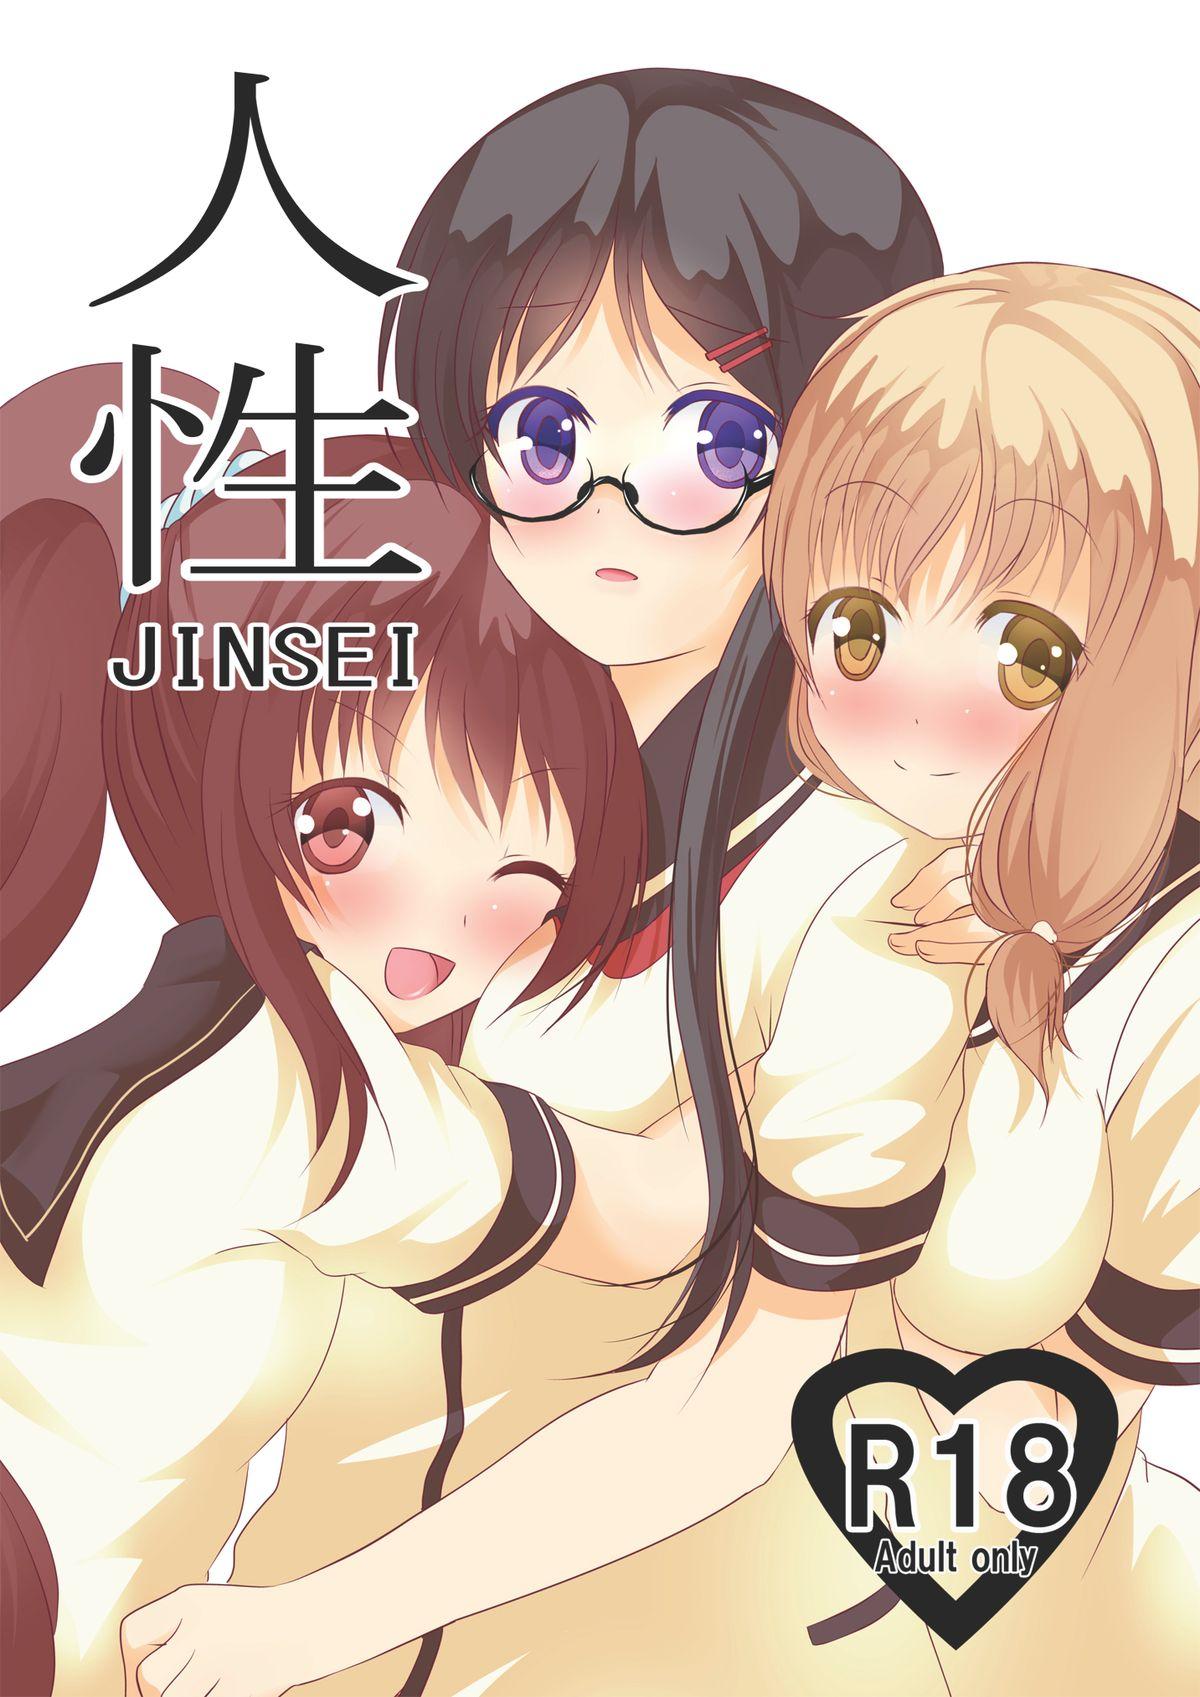 Gang Jinsei - Jinsei Cougars - Picture 1